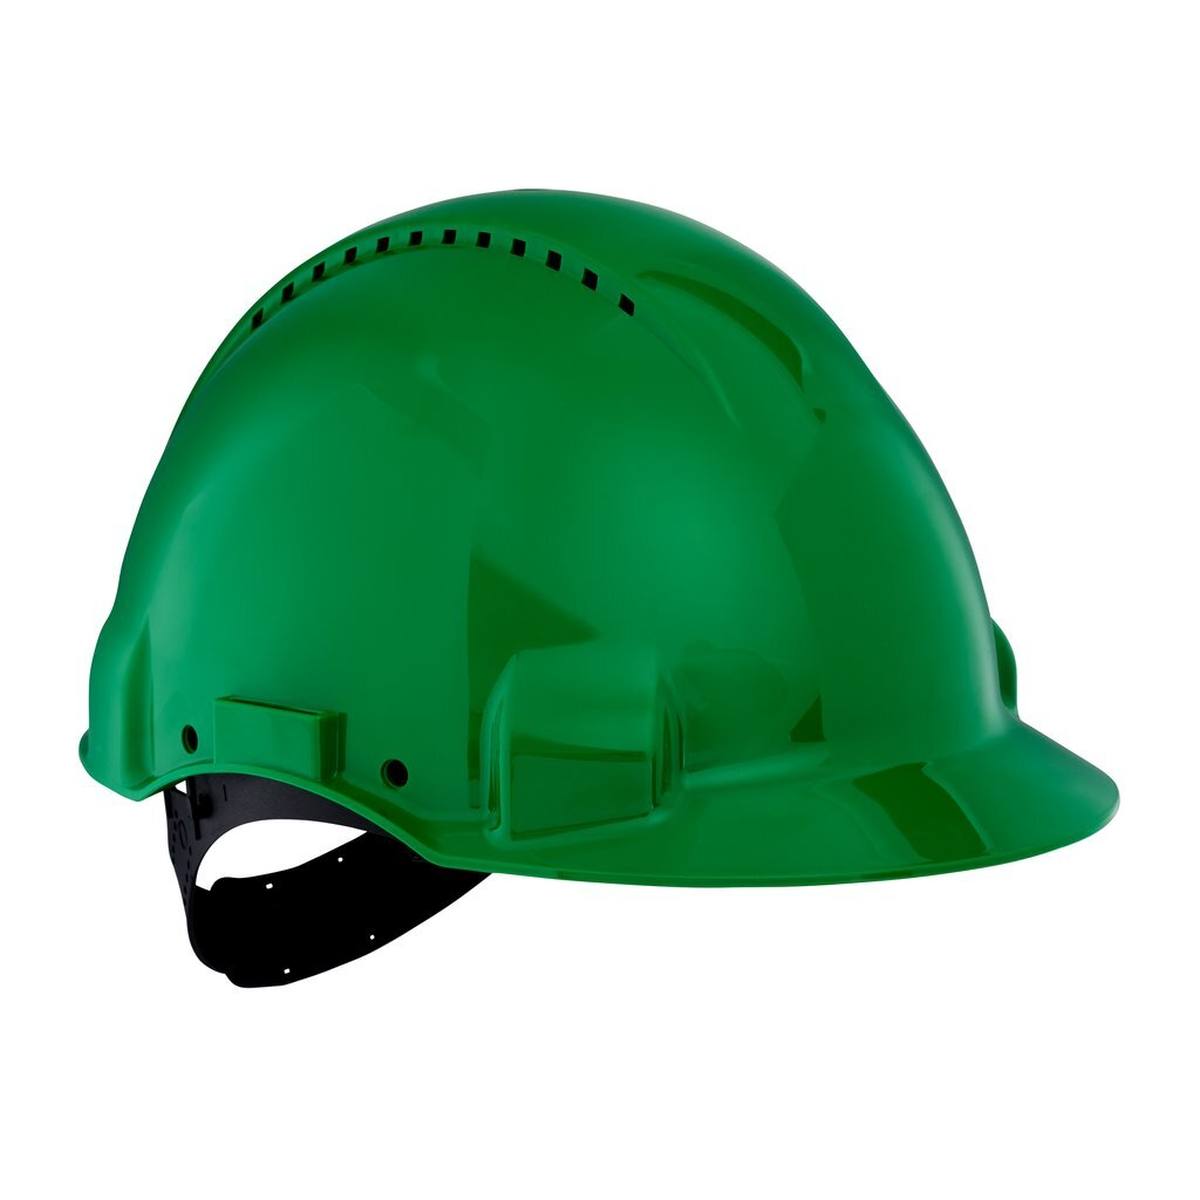 3M G3000 casque de protection G30CUG en vert, ventilé, avec uvicator, pinlock et bande de soudure en plastique